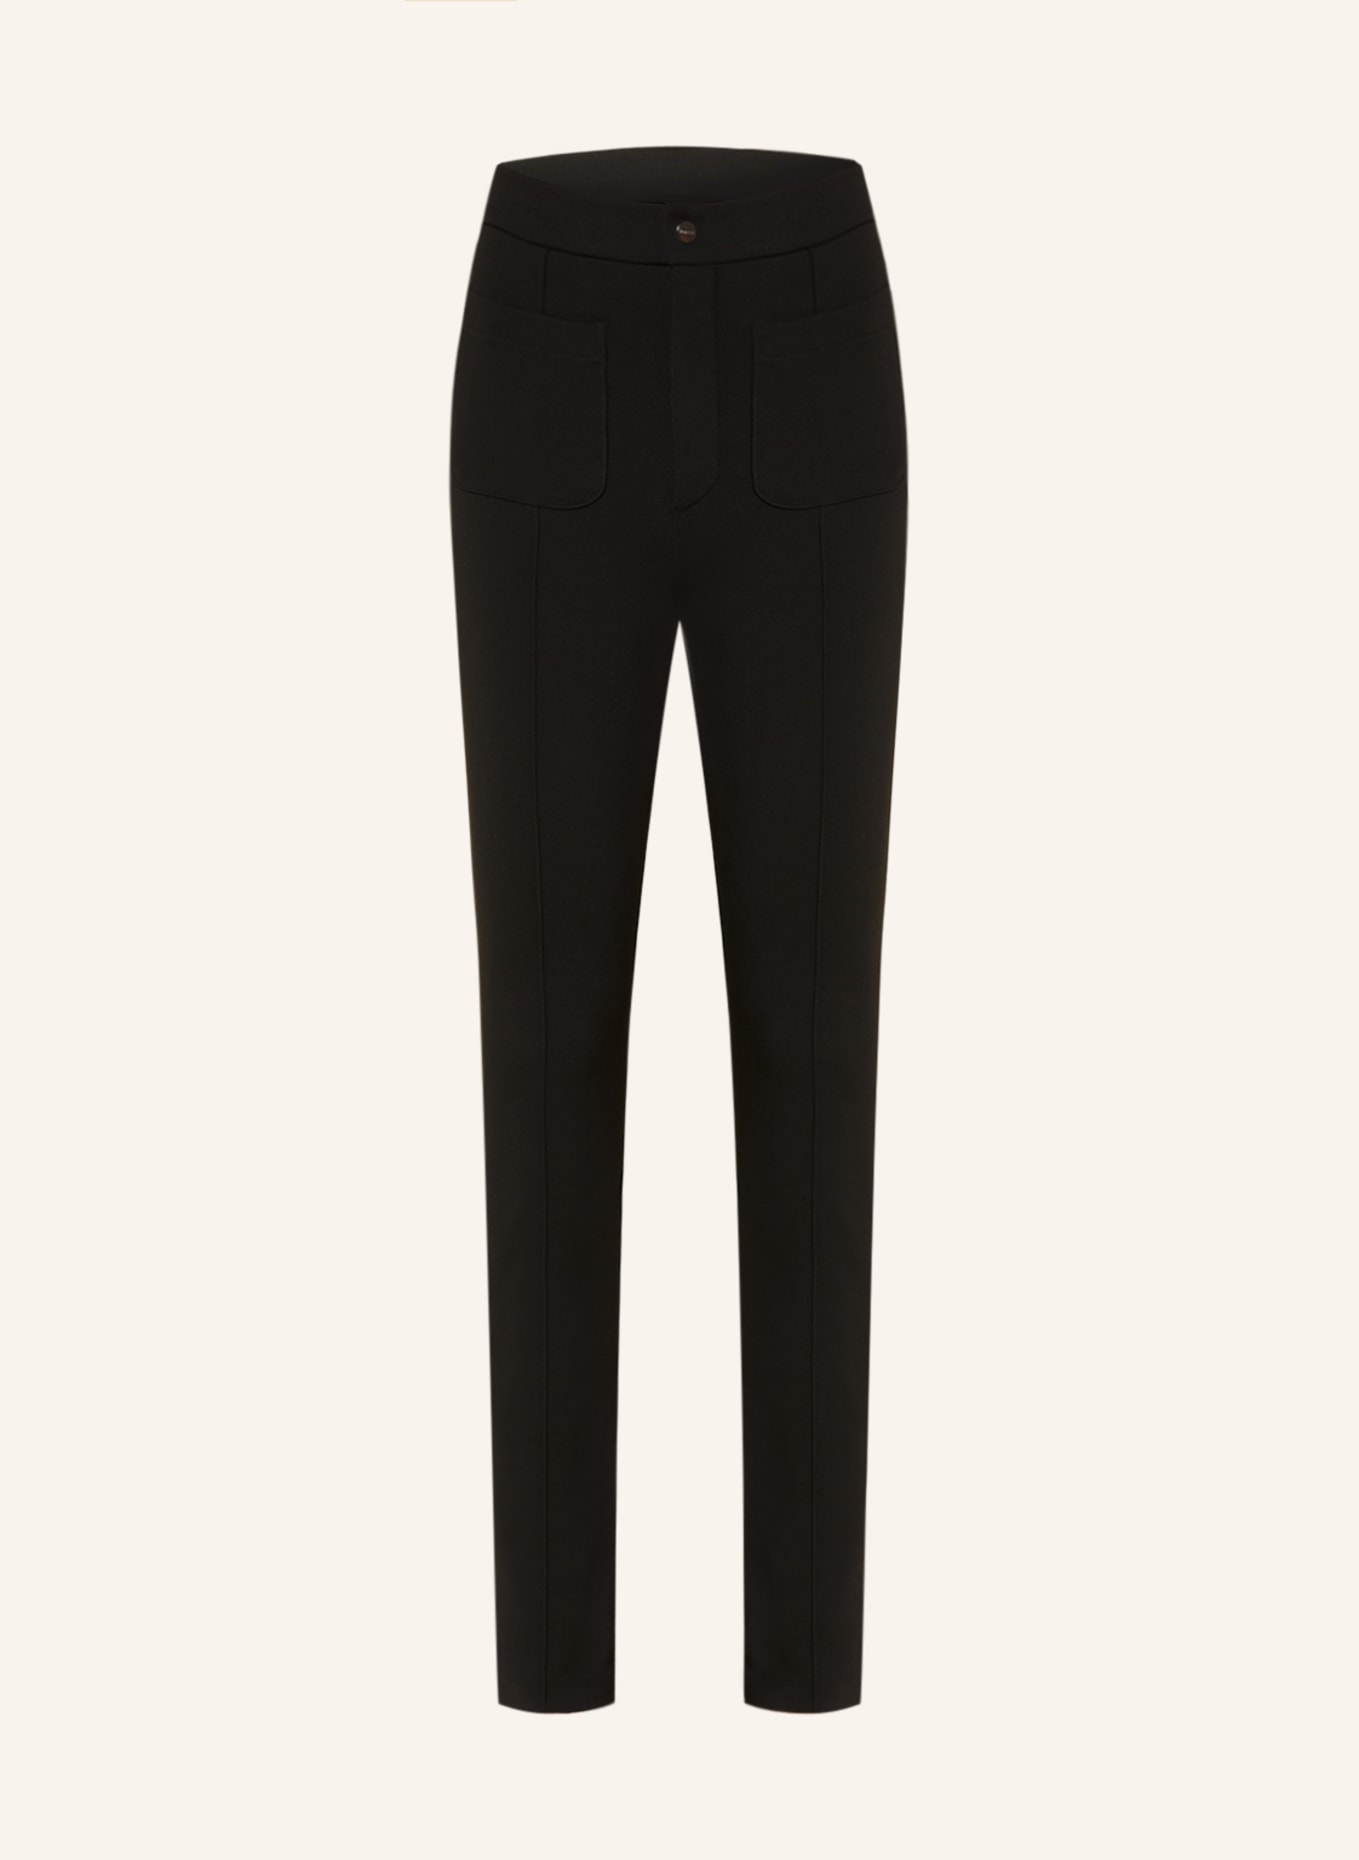 VANILIA Jersey pants, Color: BLACK (Image 1)